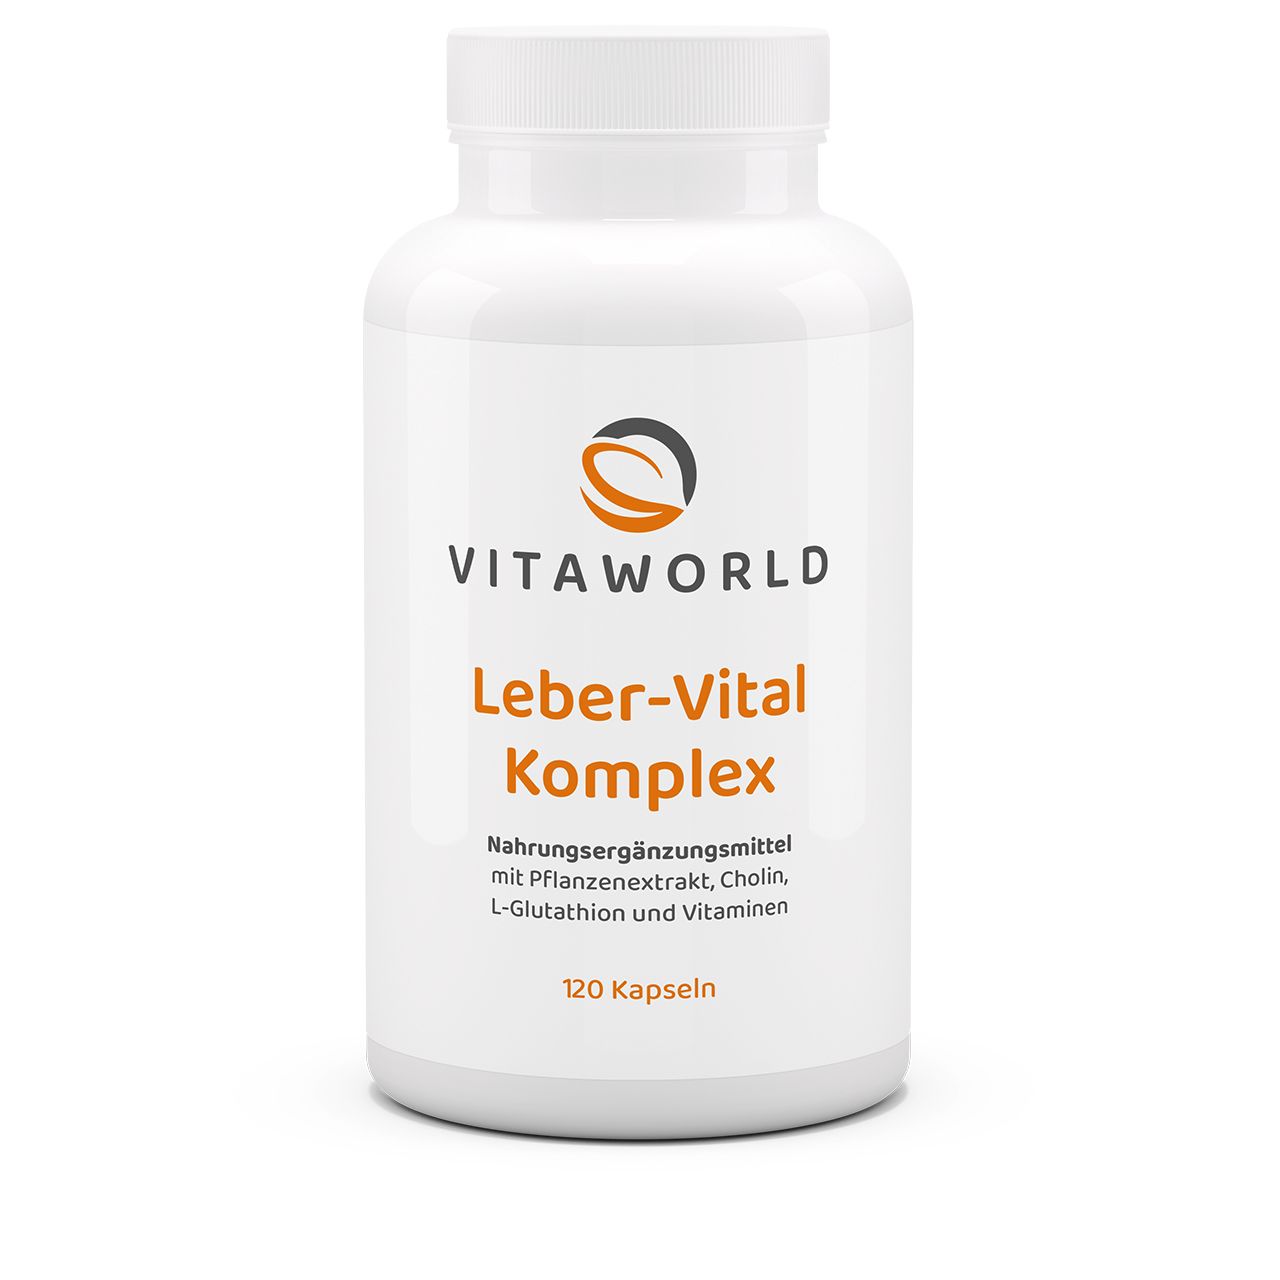 Vitaworld Leber-Vital Komplex | 120 Kapseln | mit Cholin, Mariendistel Extrakt und Silymarin | vegan | gluten- und laktosefrei